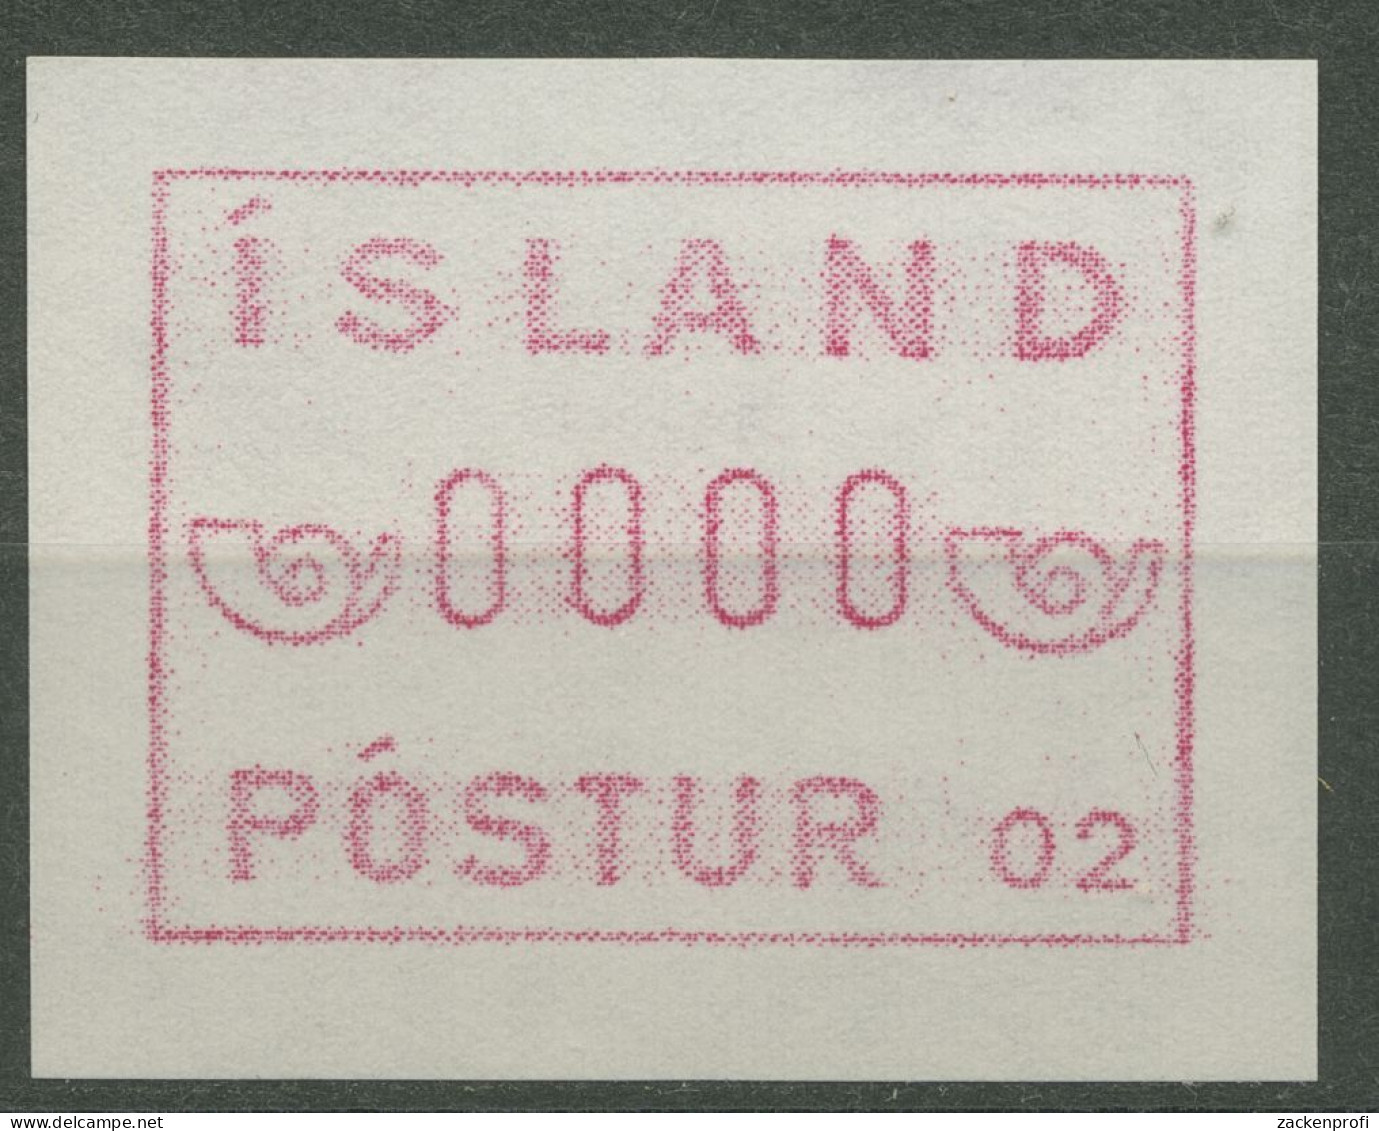 Island ATM 1983 Automat 02, 0000-Druck Und Gummidruck, ATM 1.2 C I+VI Postfrisch - Viñetas De Franqueo (Frama)